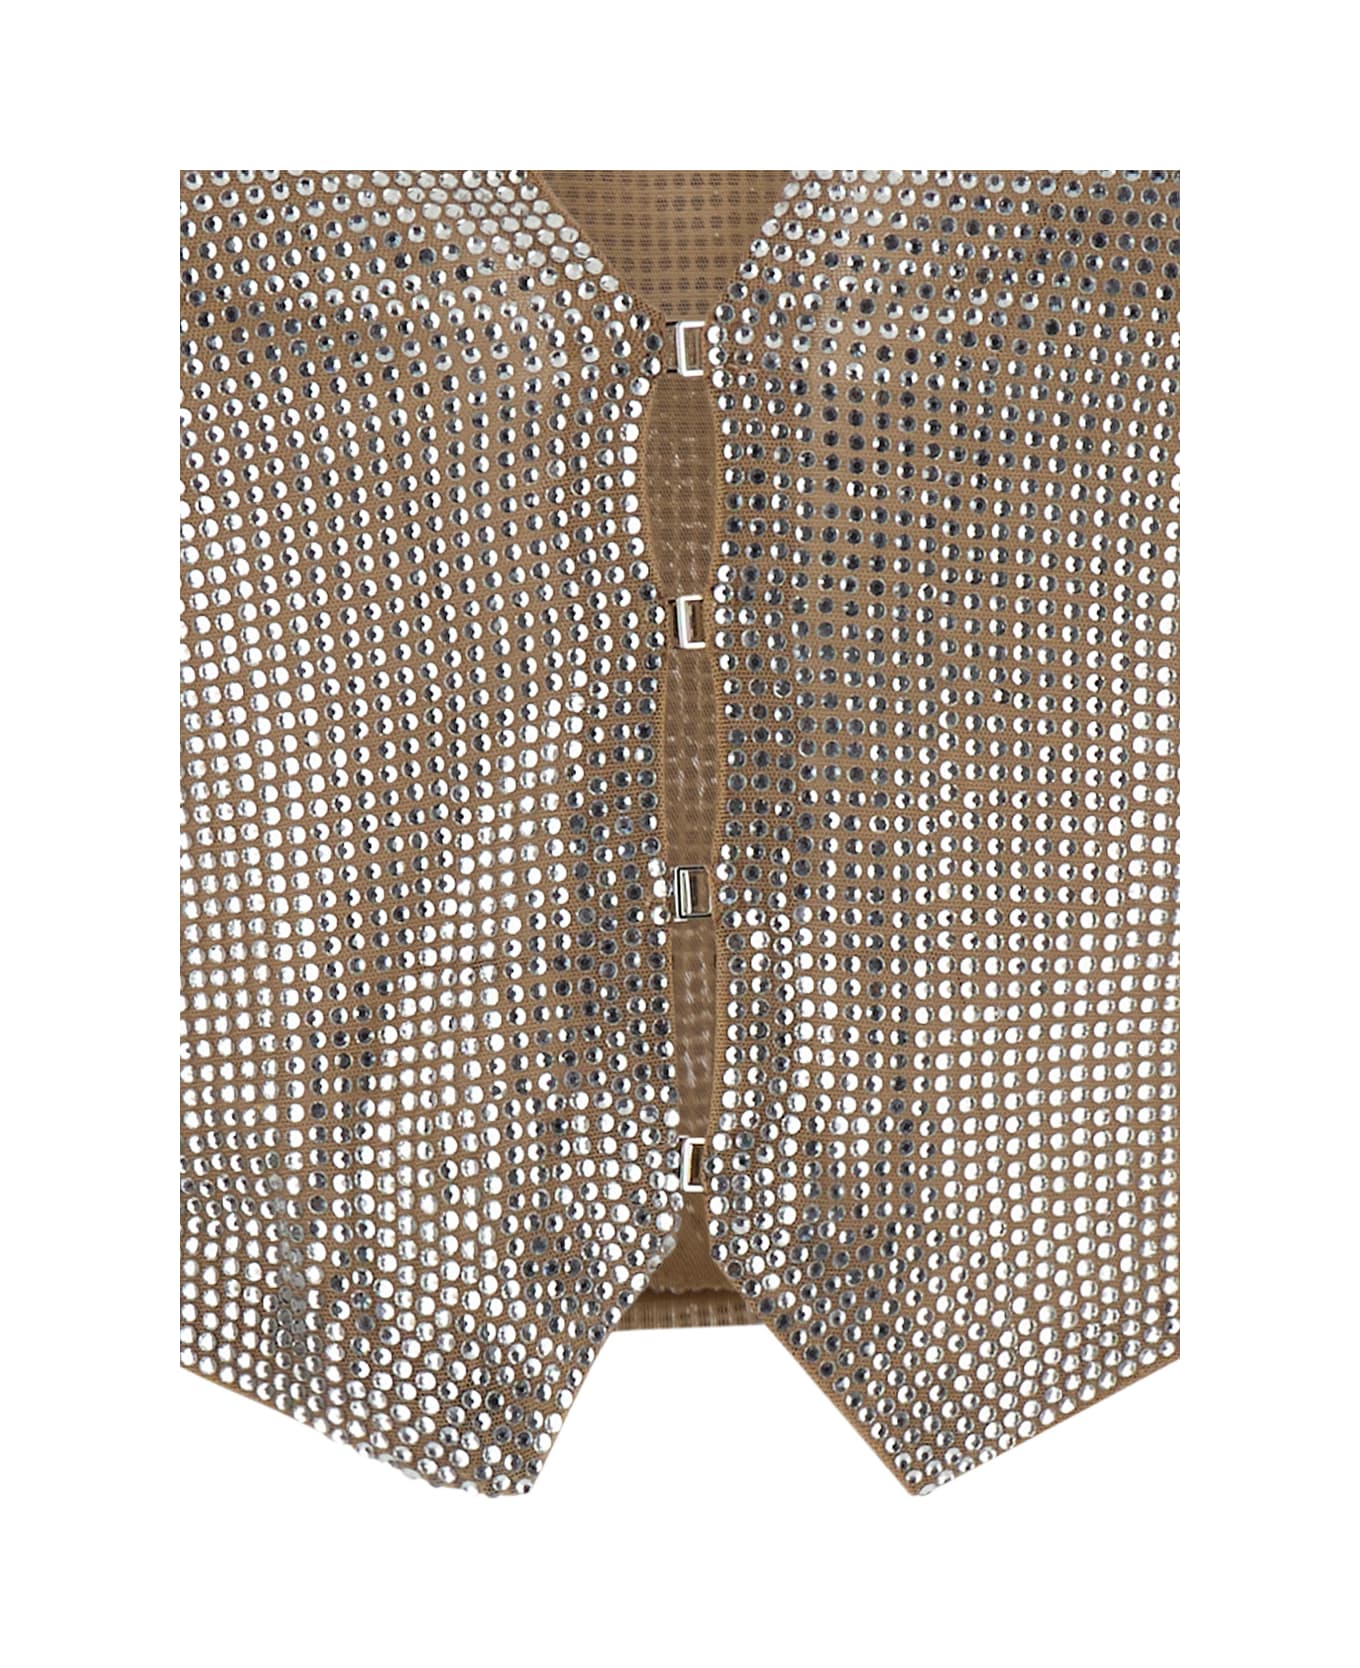 Giuseppe di Morabito Silver/clear Beige V-neck Crop Vest In Technical Fabric Woman - Metallic ベスト